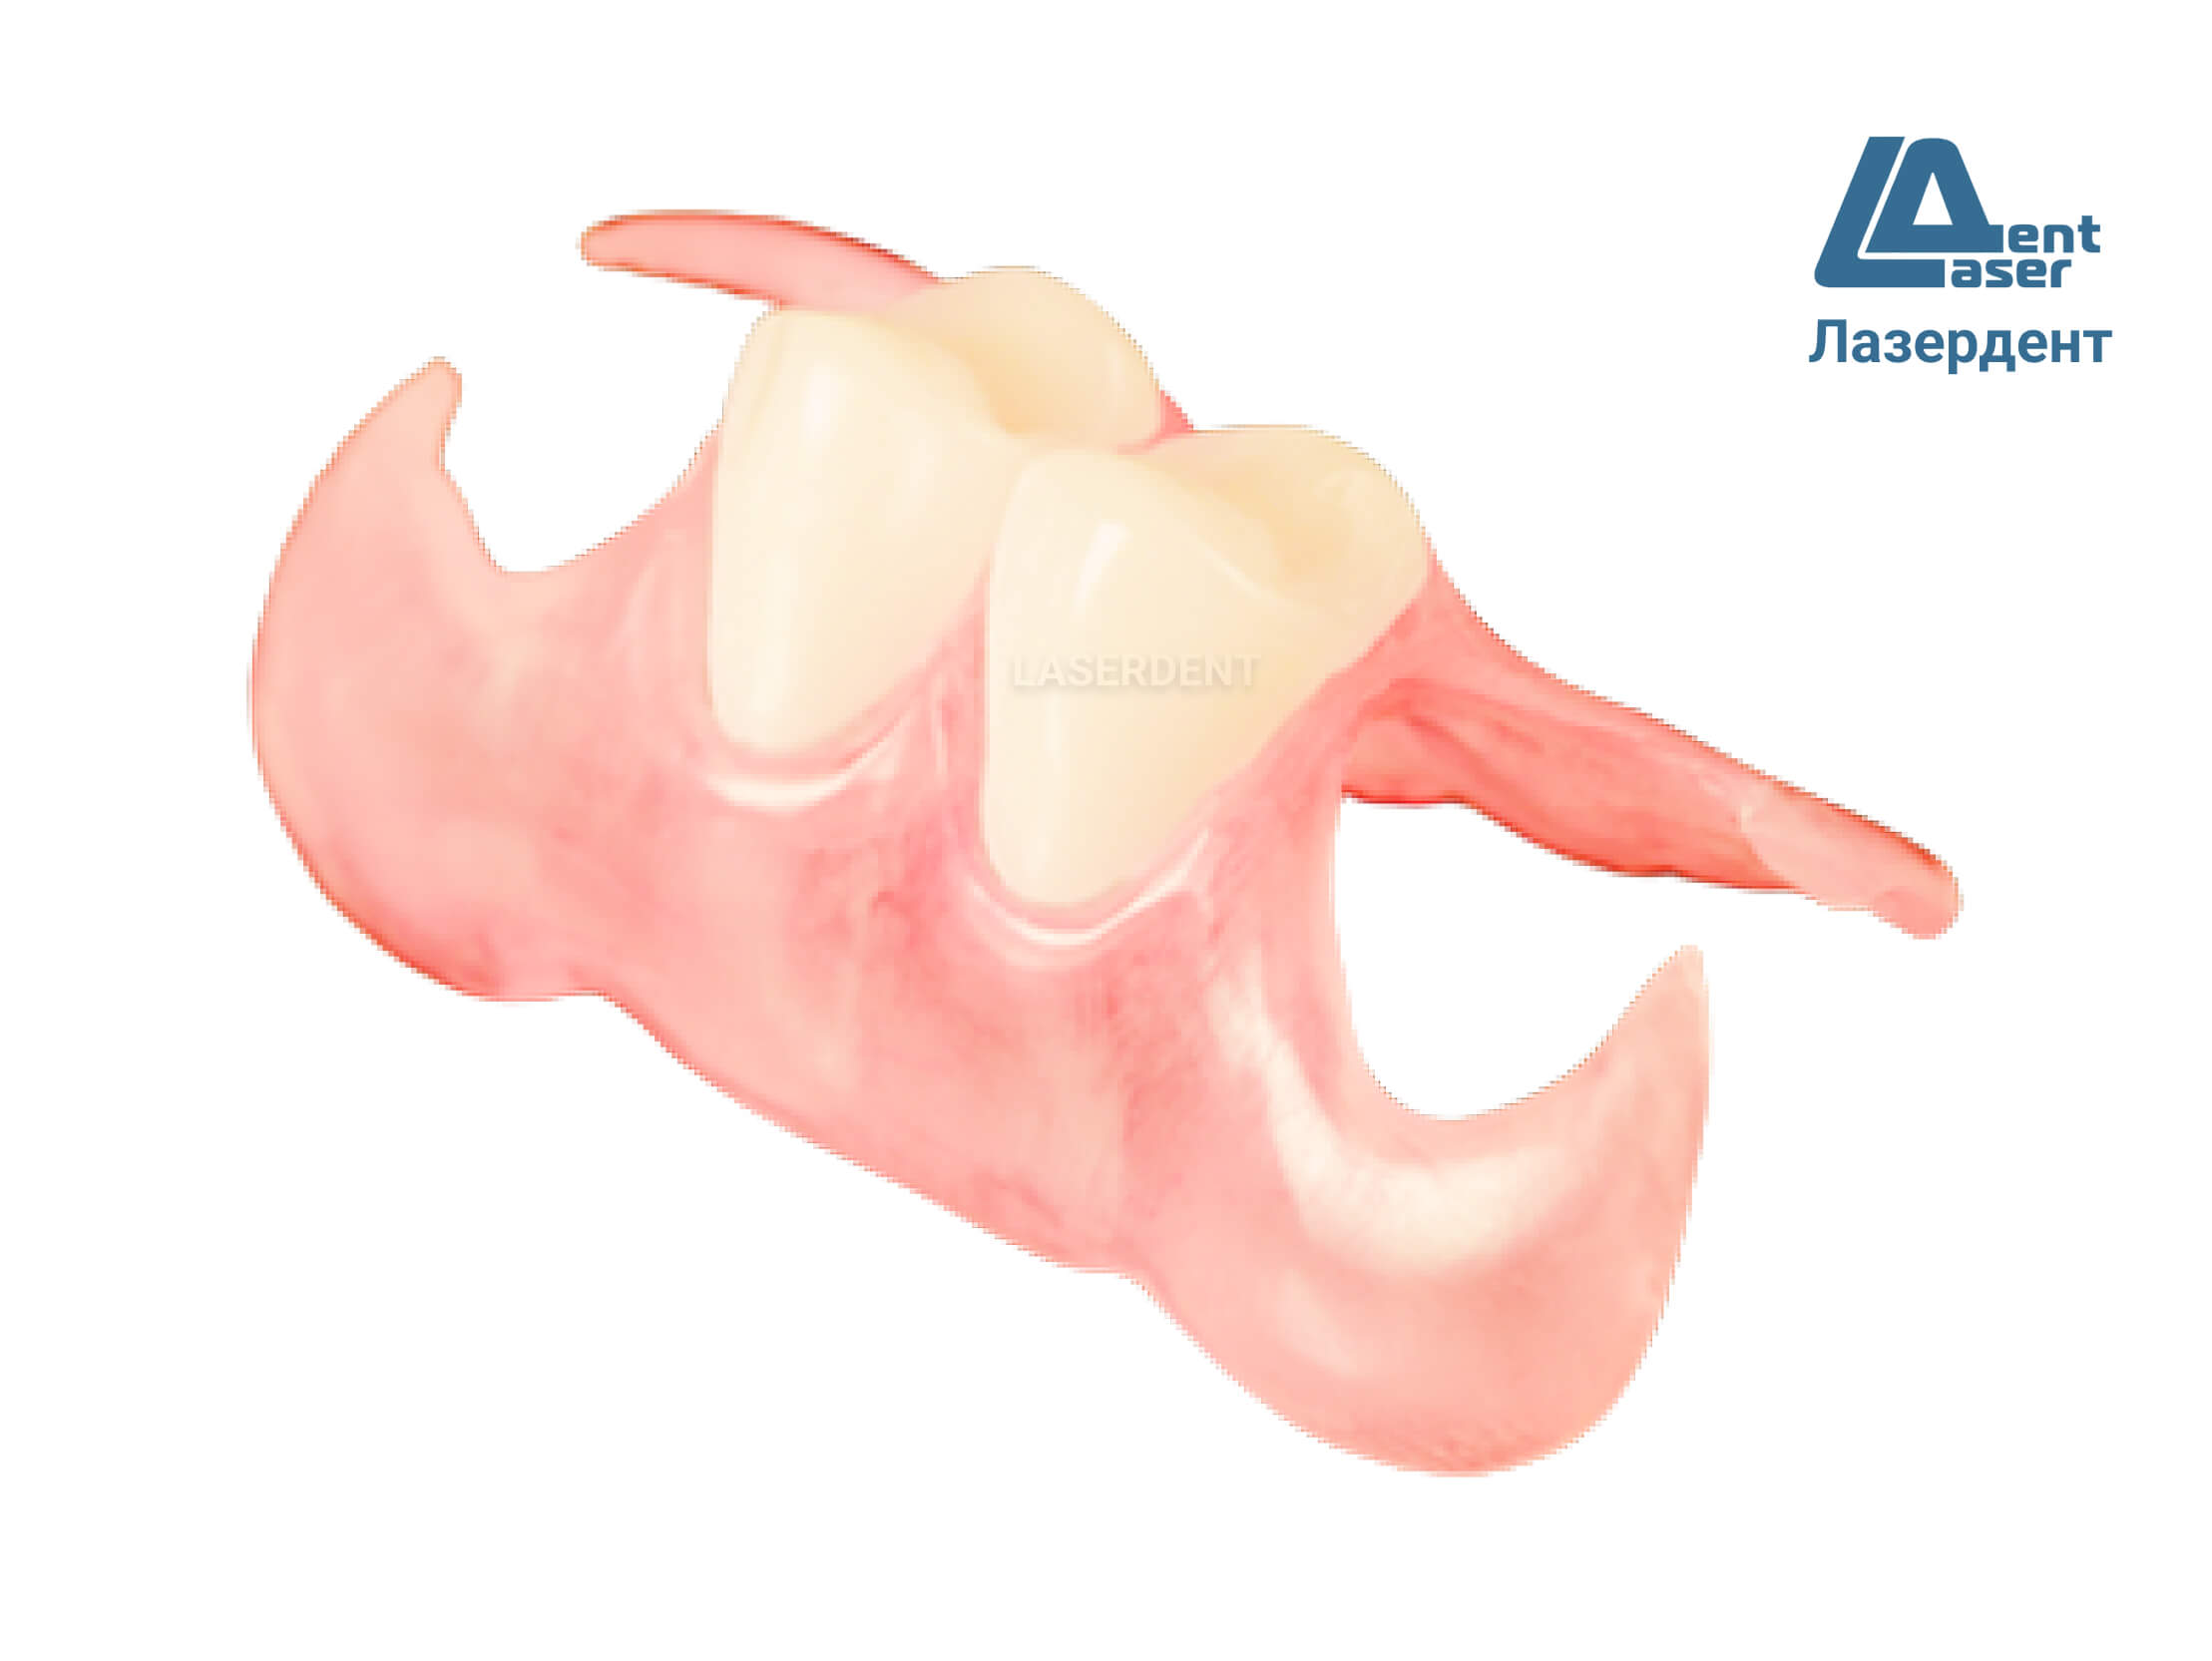 Косметический протез зубов | Стоматологическая клиника Культура